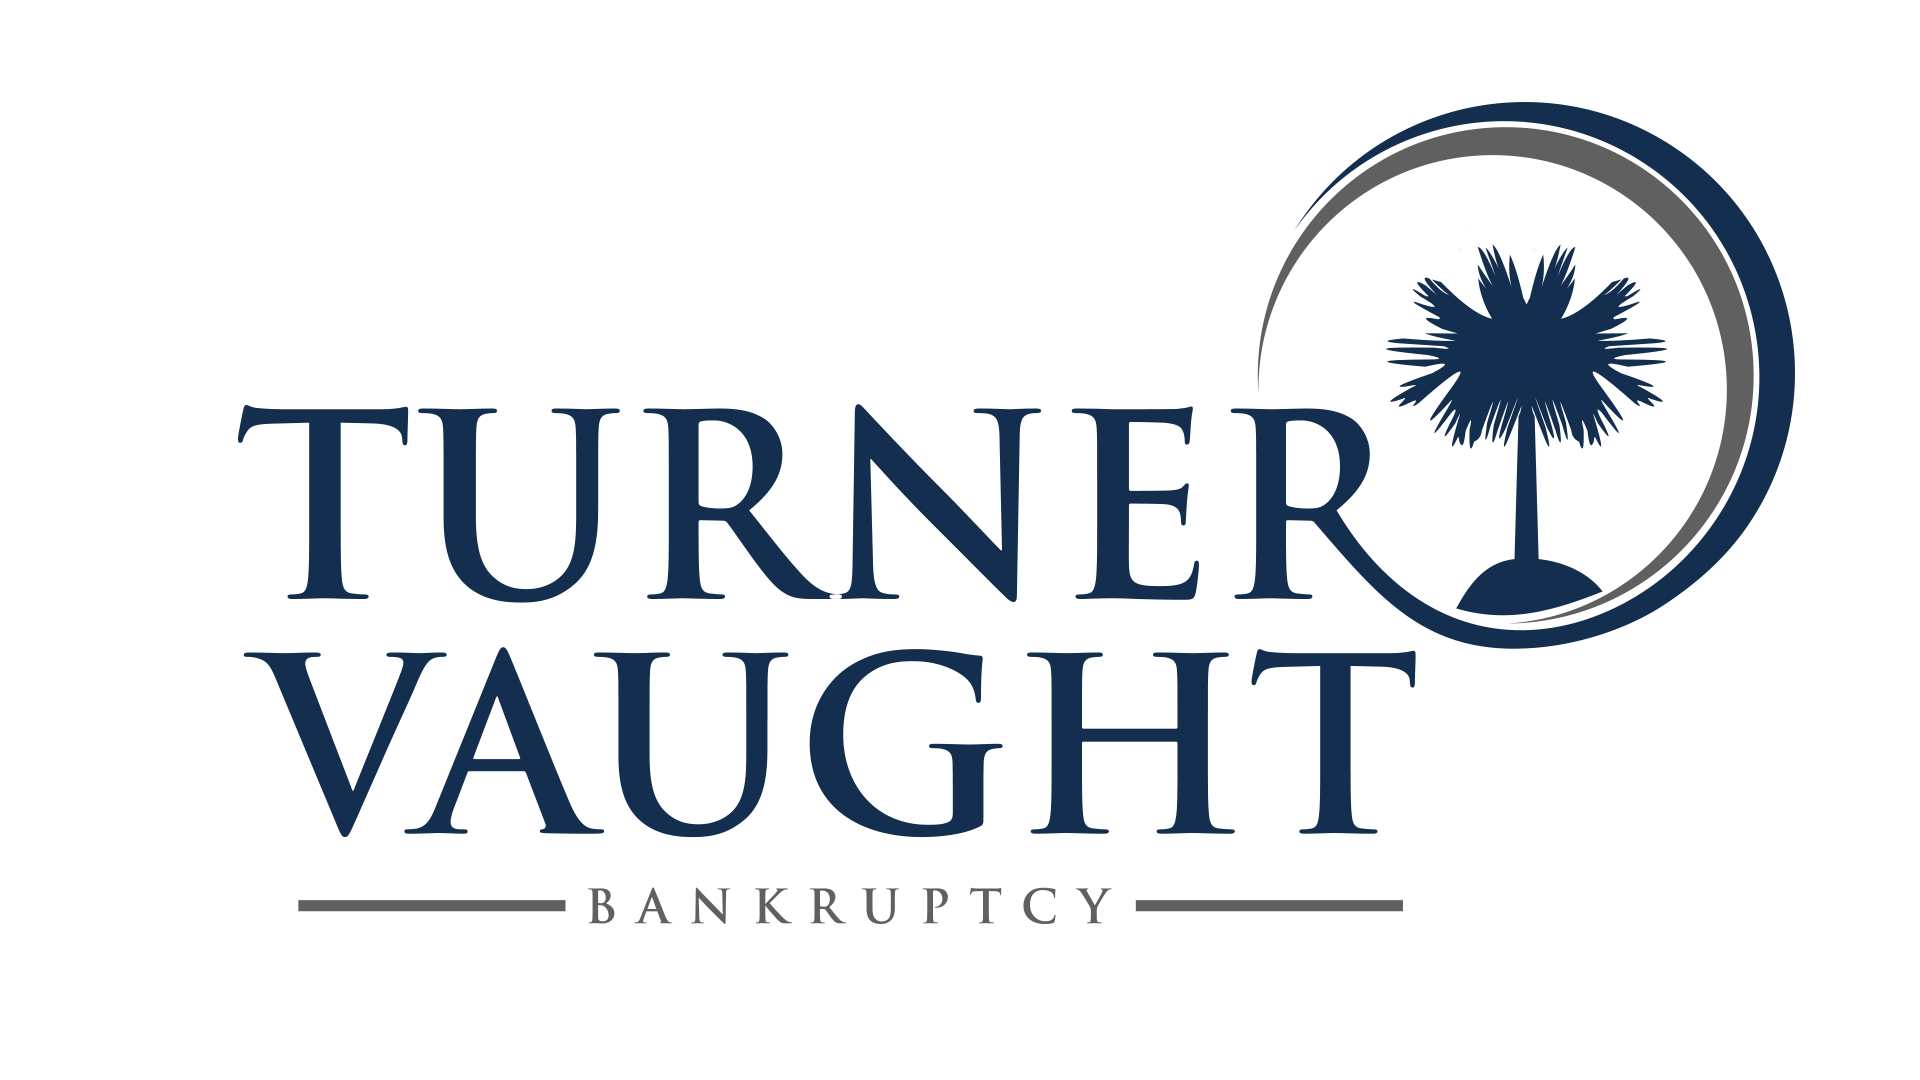 Turner Vaught Bankruptcy Logo